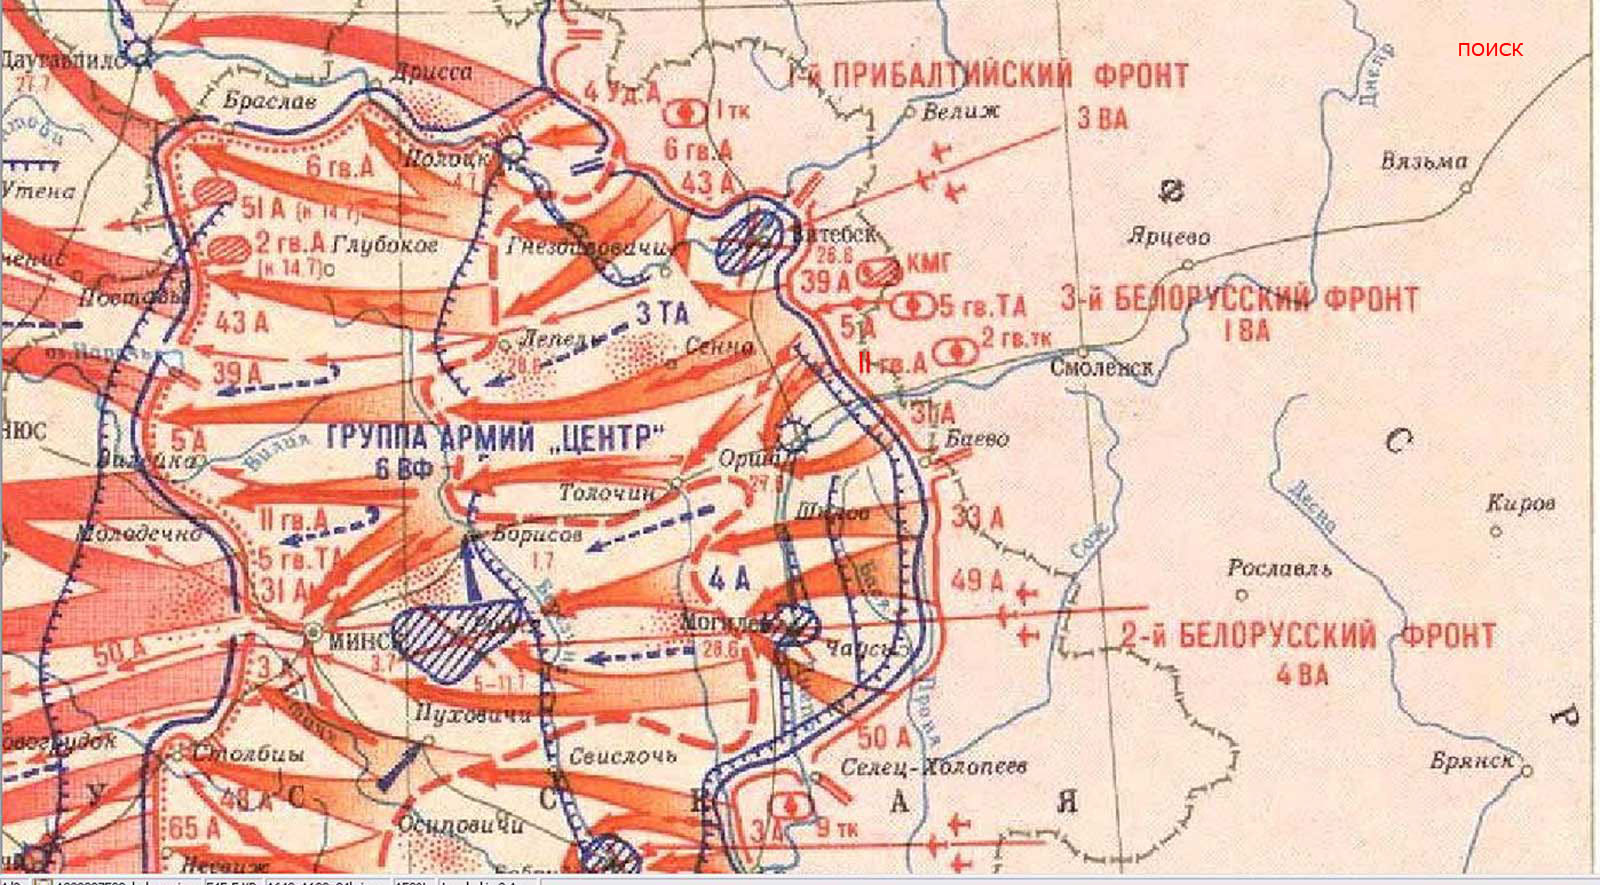 Операции 3 белорусского фронта. Белорусская операция («Багратион») операция карта. Белорусская операция 1944 фронты. Операция Багратион 1 белорусский фронт. Карта освобождения Белоруссии в 1944 году.